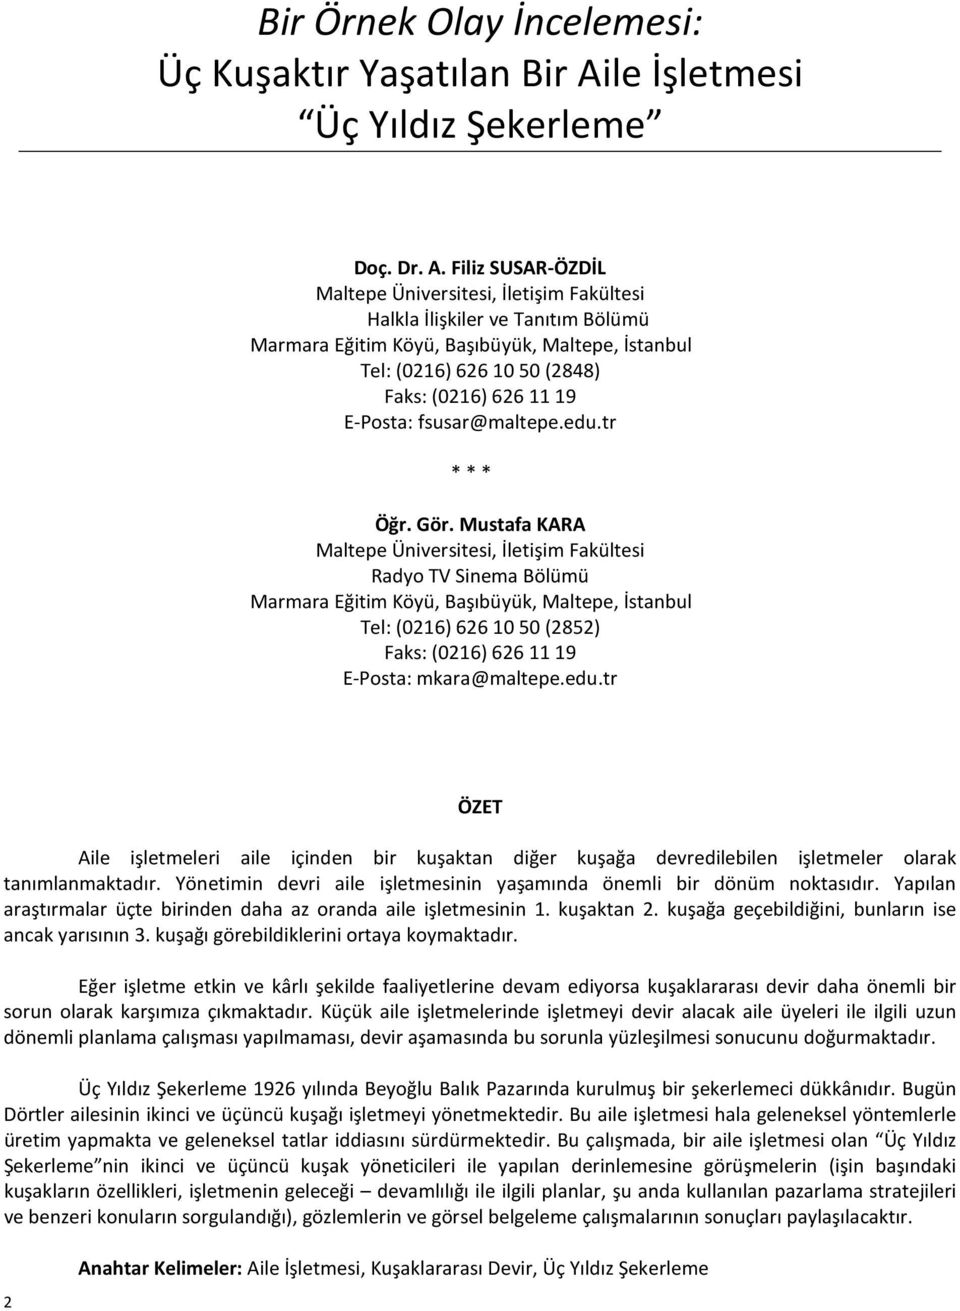 Filiz SUSAR-ÖZDİL Maltepe Üniversitesi, İletişim Fakültesi Halkla İlişkiler ve Tanıtım Bölümü Marmara Eğitim Köyü, Başıbüyük, Maltepe, İstanbul Tel: (0216) 626 10 50 (2848) Faks: (0216) 626 11 19